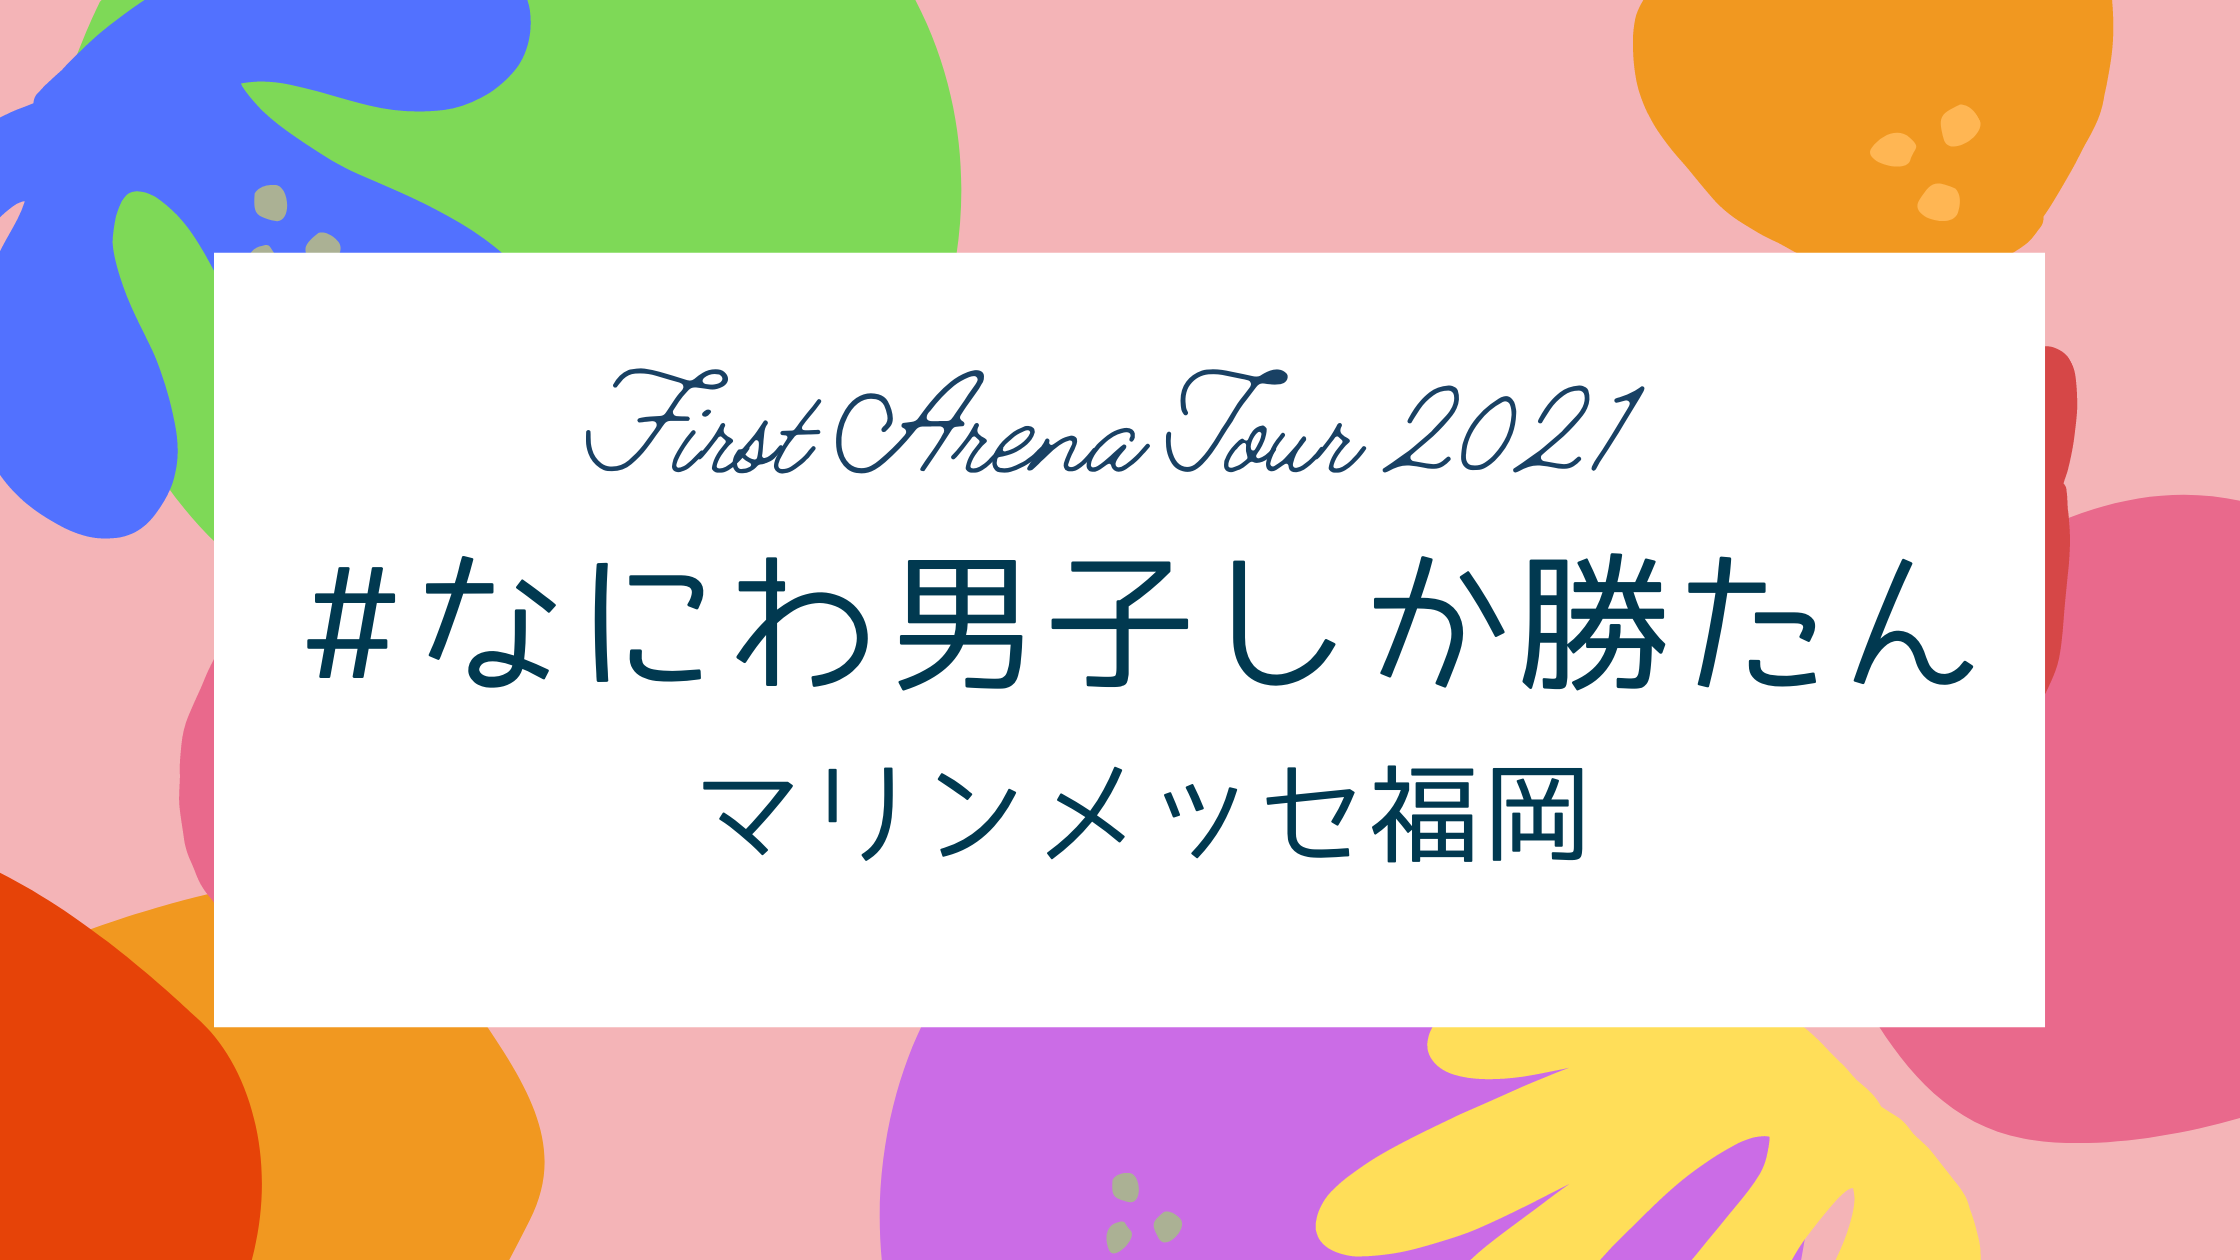 なにわ男子 First Arena Tour 2021 #なにわ男子しか勝たん 福岡公演